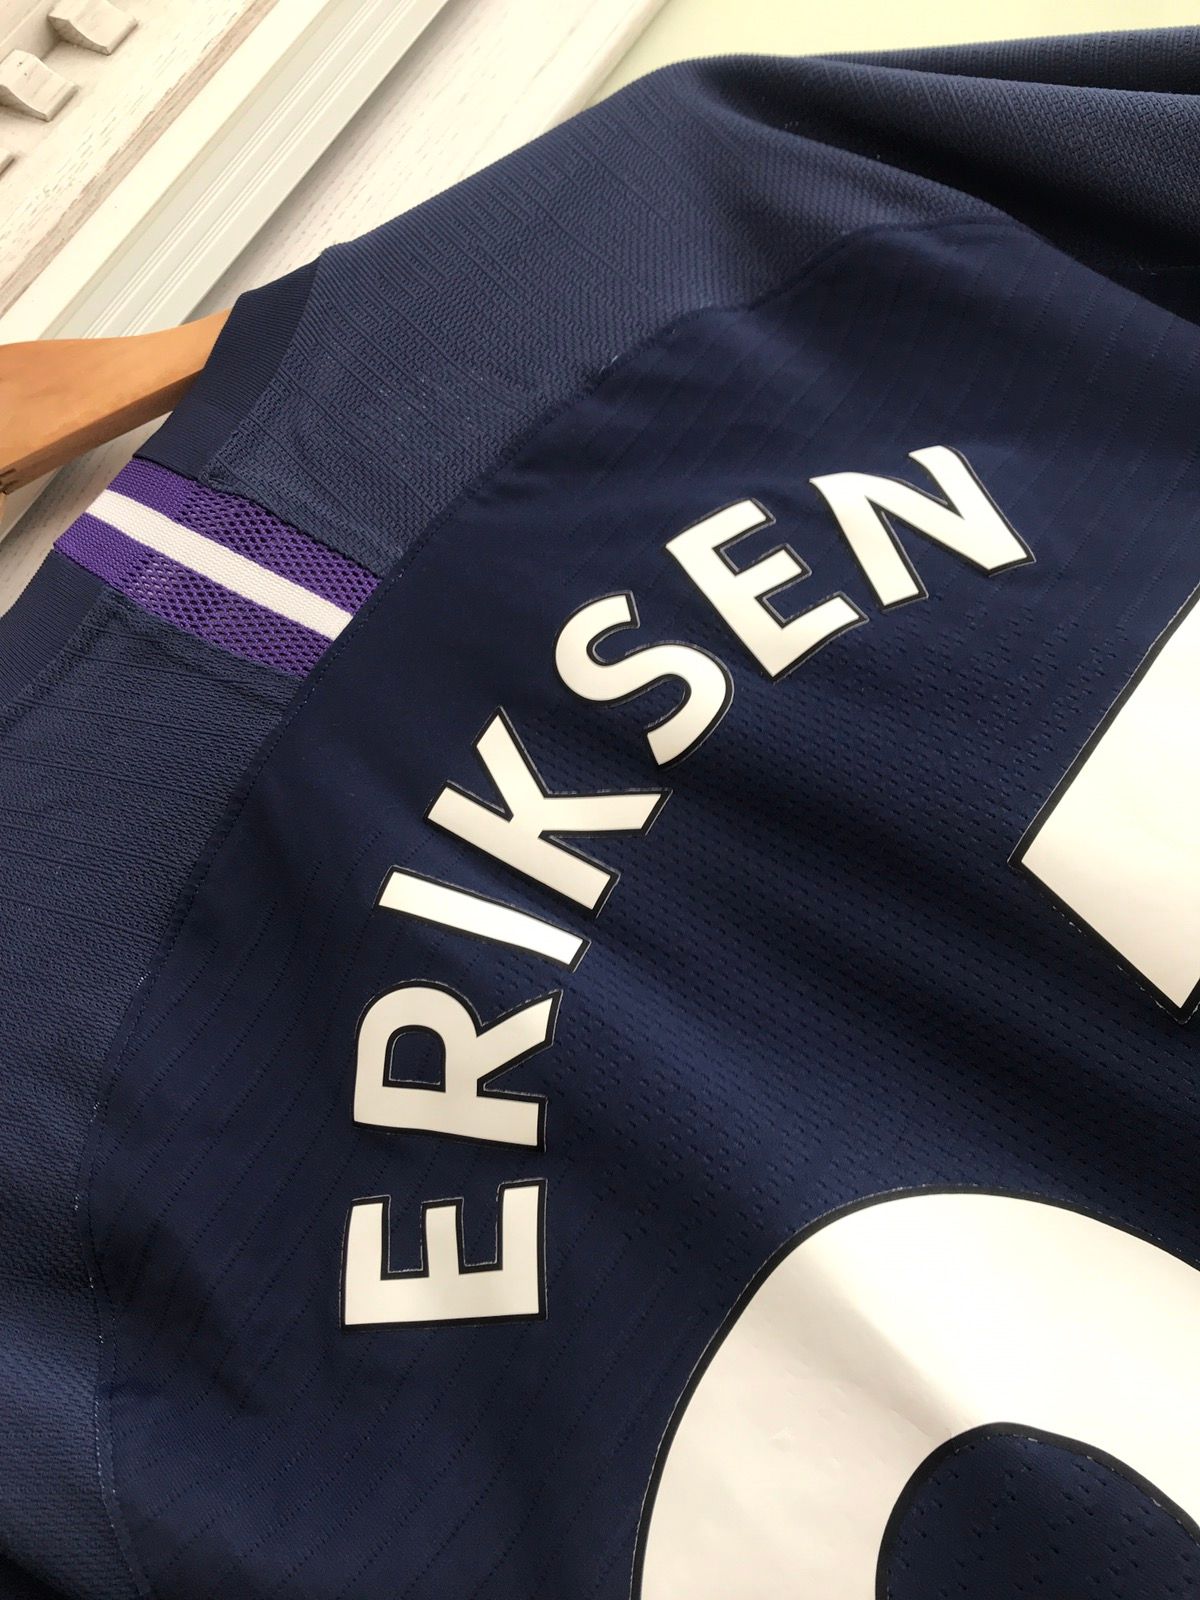 Nike Tottenham 2019-2020 Eriksen Nike Vaporknit Soccer Jersey Kit Size US L / EU 52-54 / 3 - 6 Thumbnail